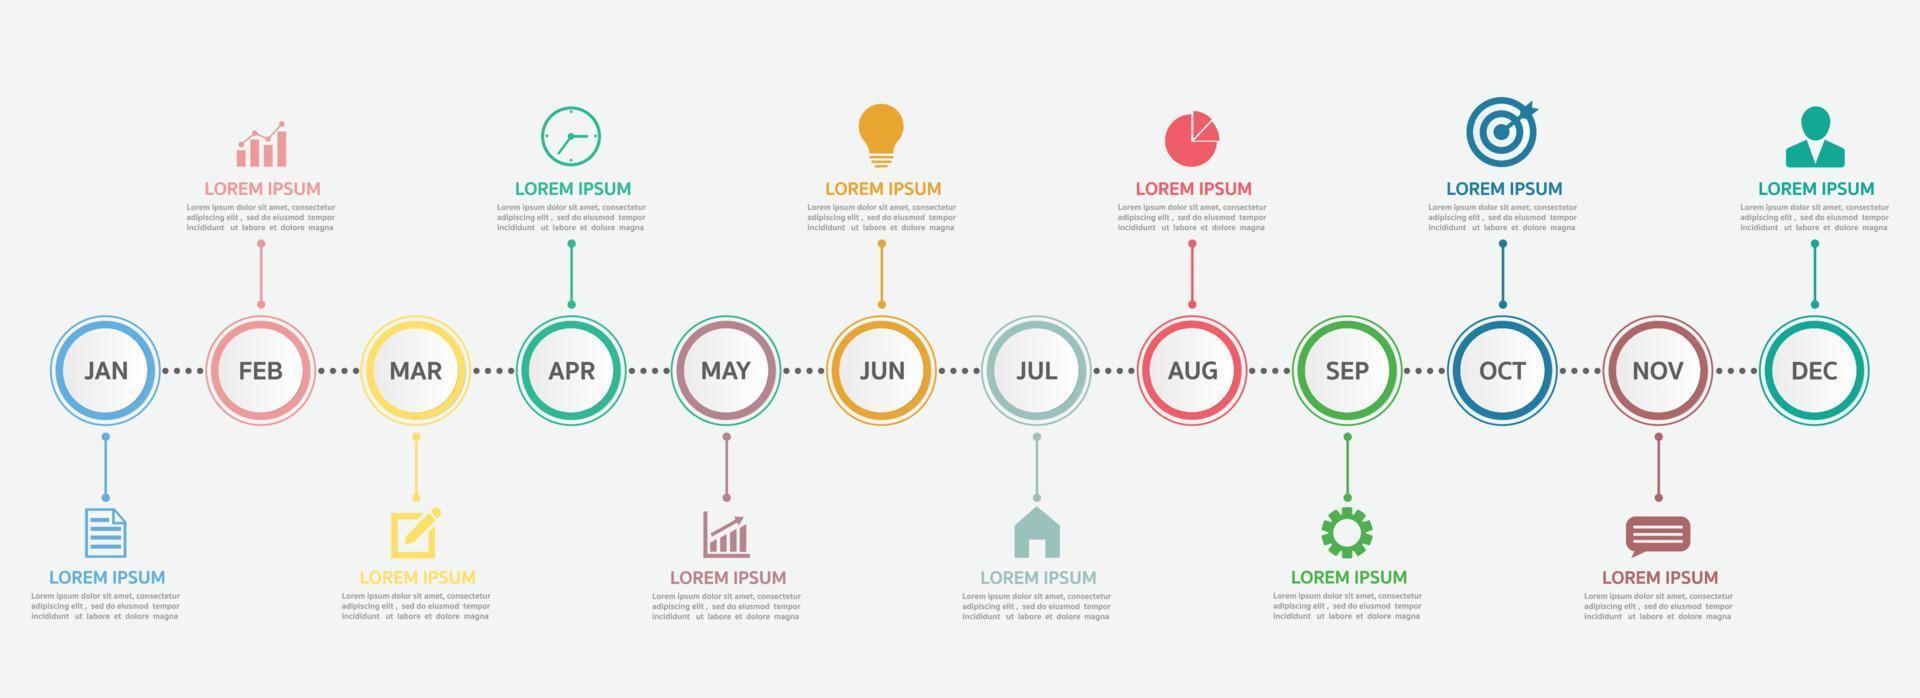 sequenza temporale per 12 mesi, modello di infografica per le imprese. vettore